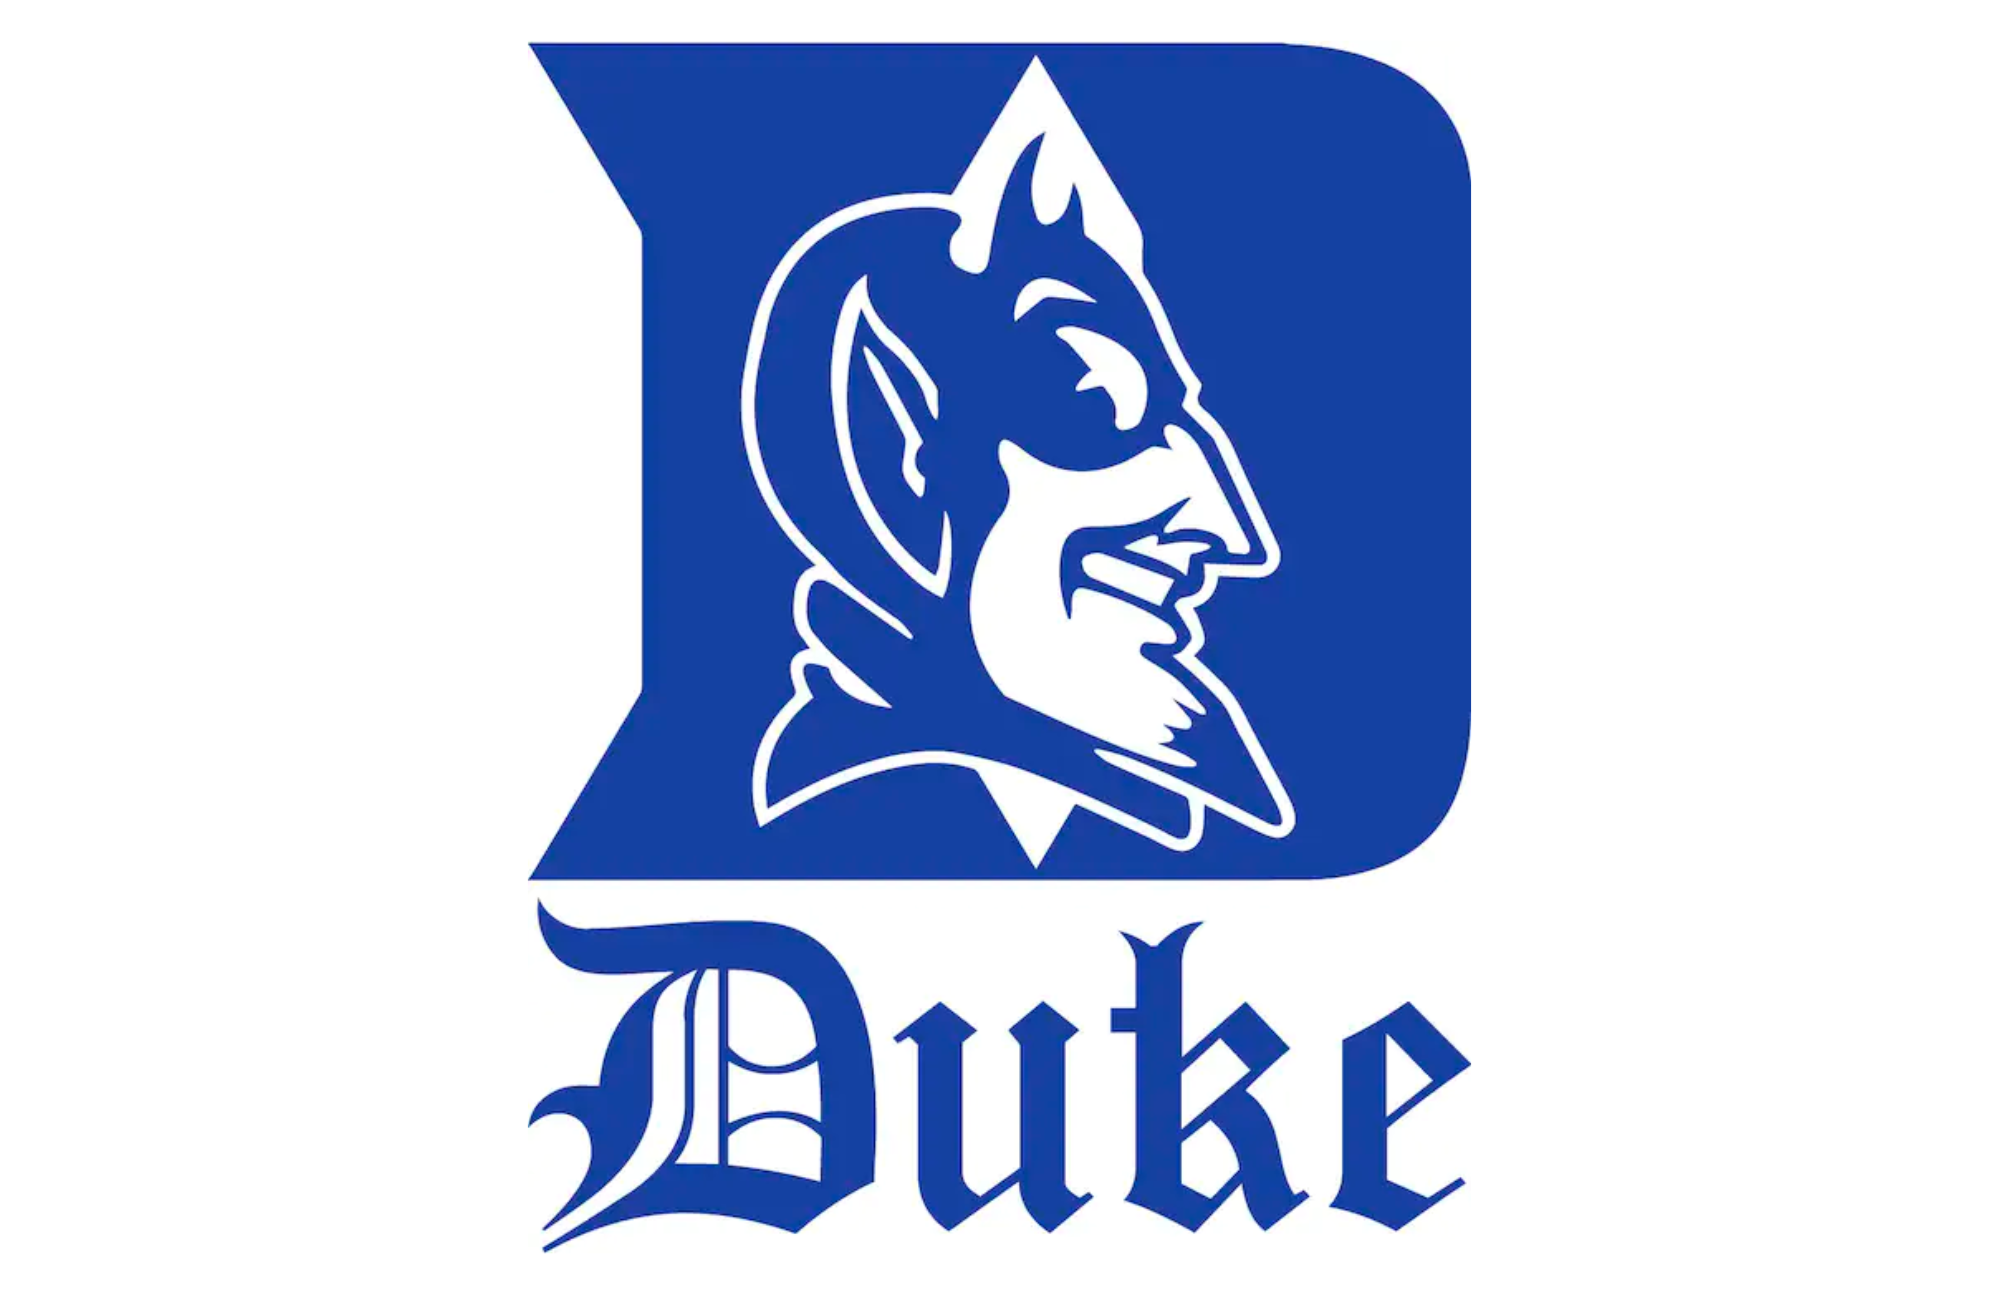 Duke University logo and blue devil 